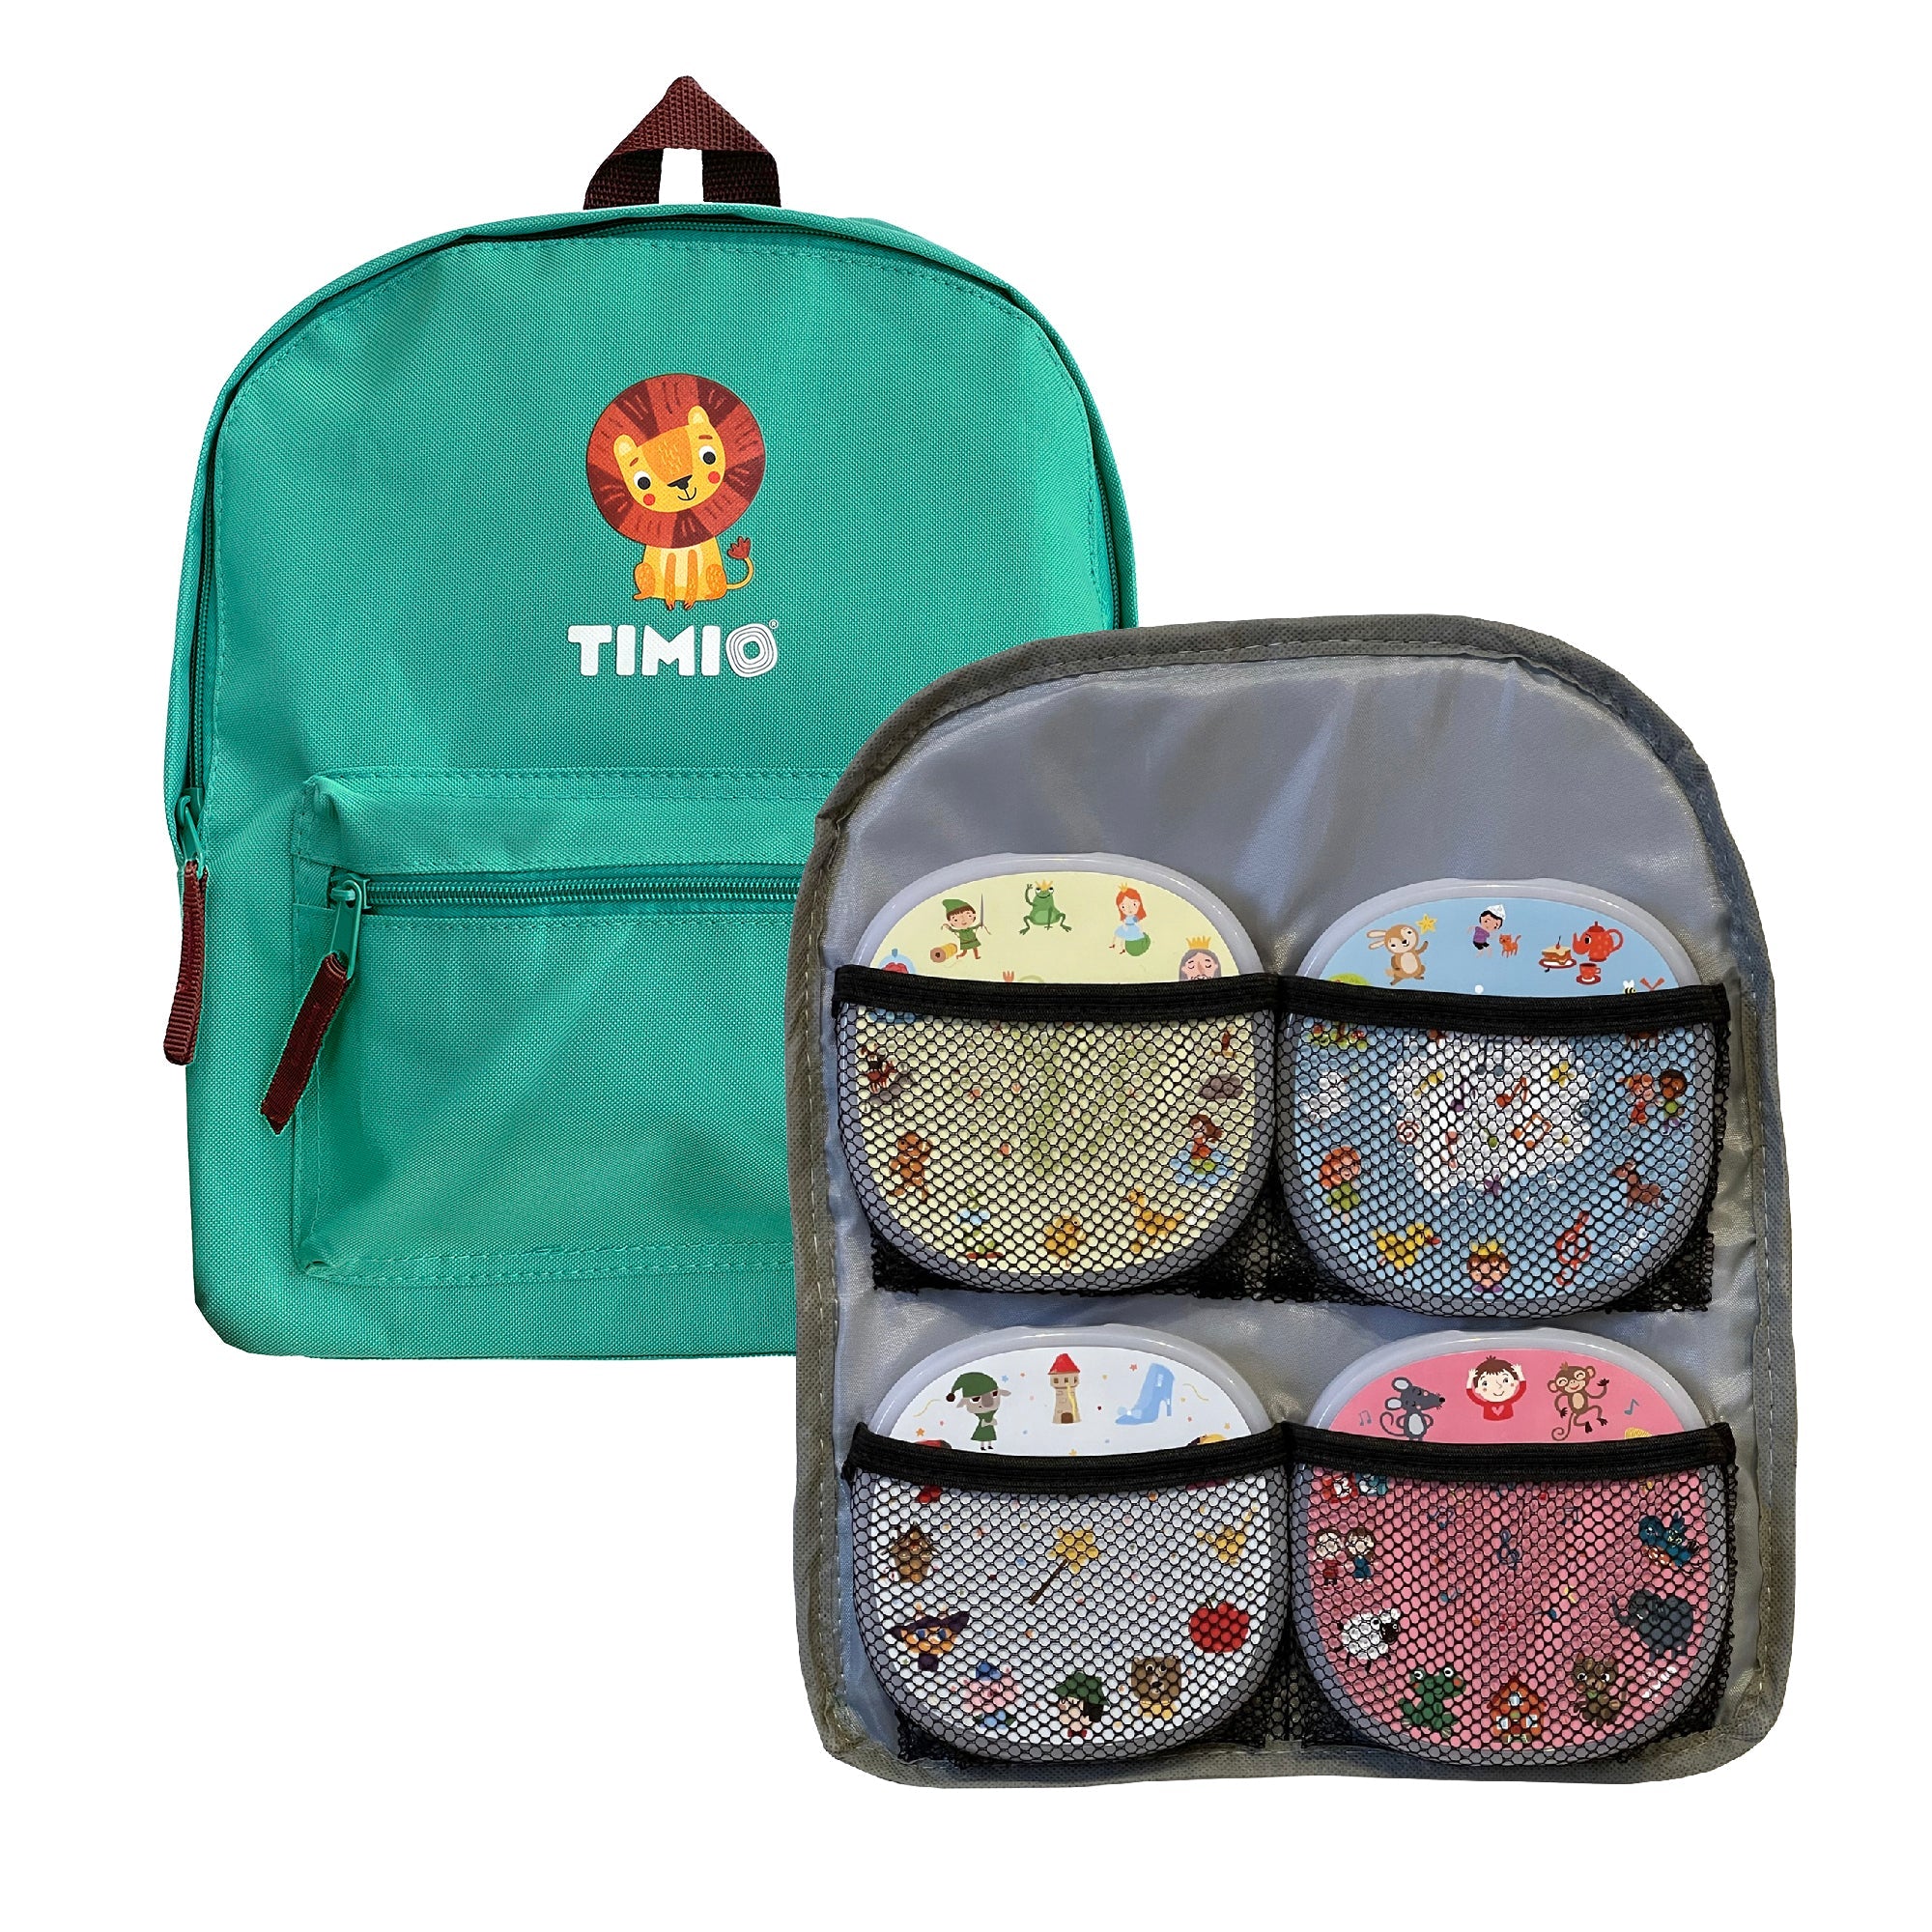 Timio: plecak na odtwarzacz i dyski Timio Backpack